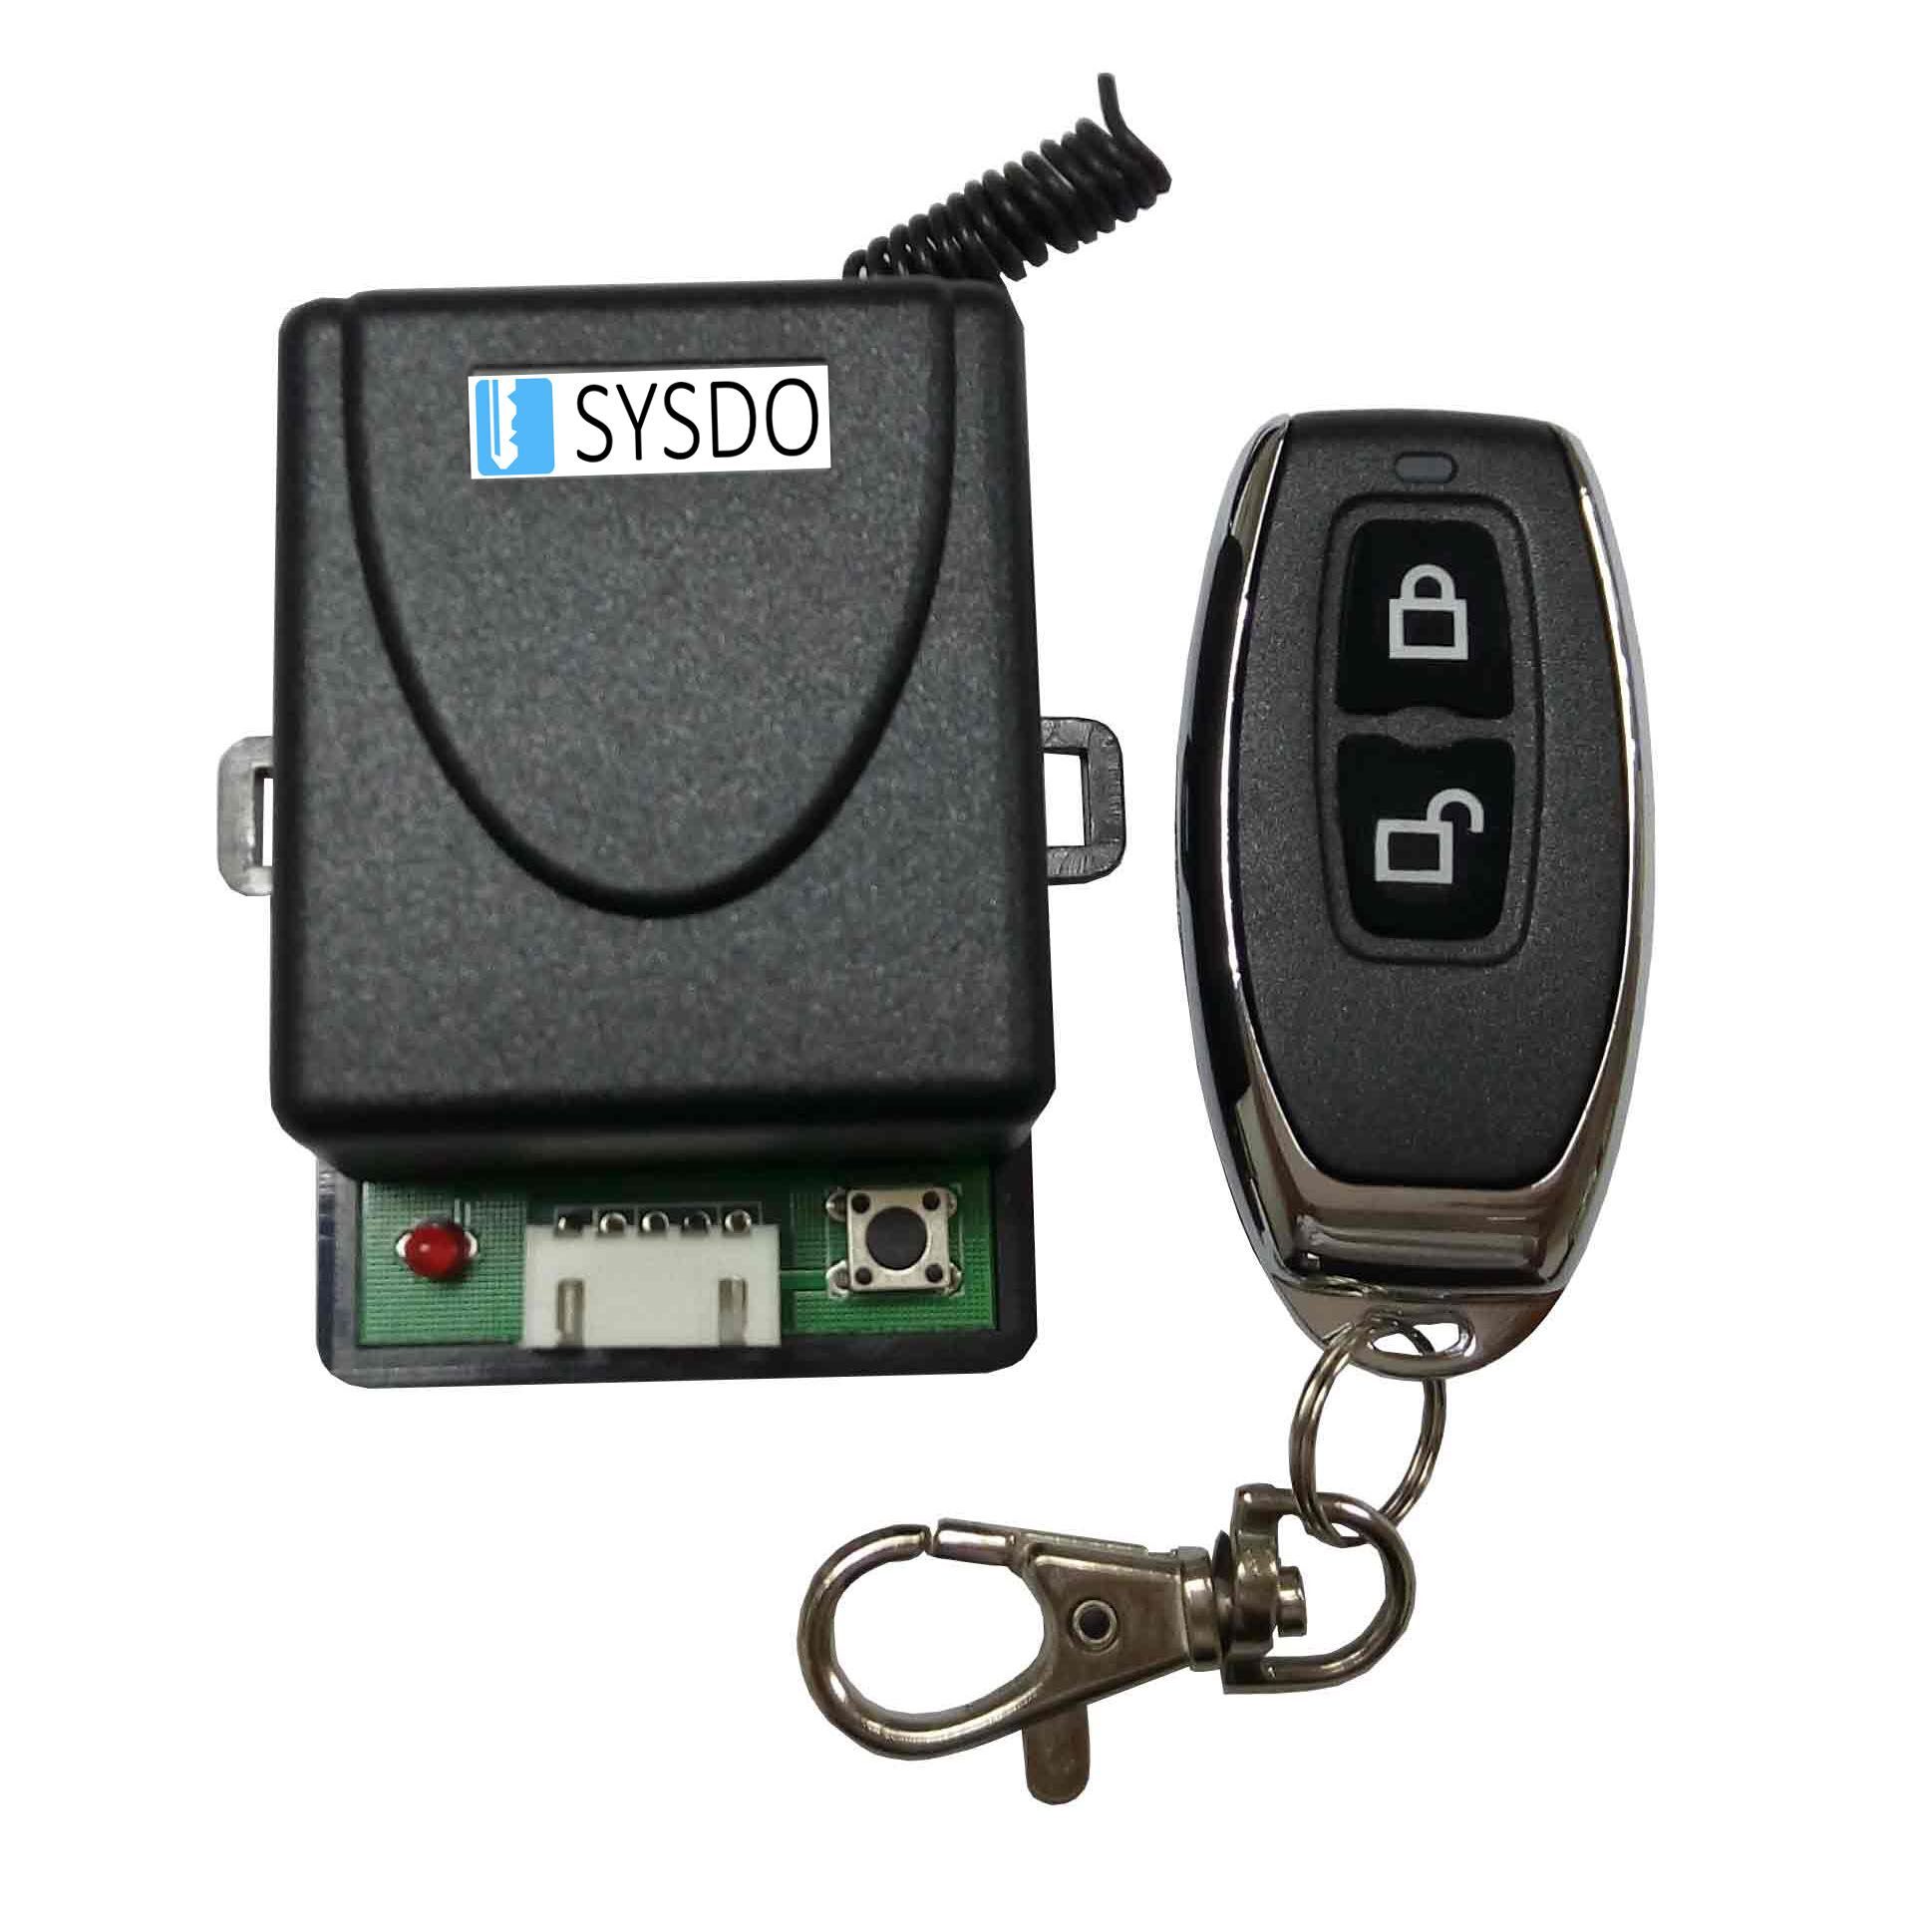 SYSA951 ovladač pro SYSA950